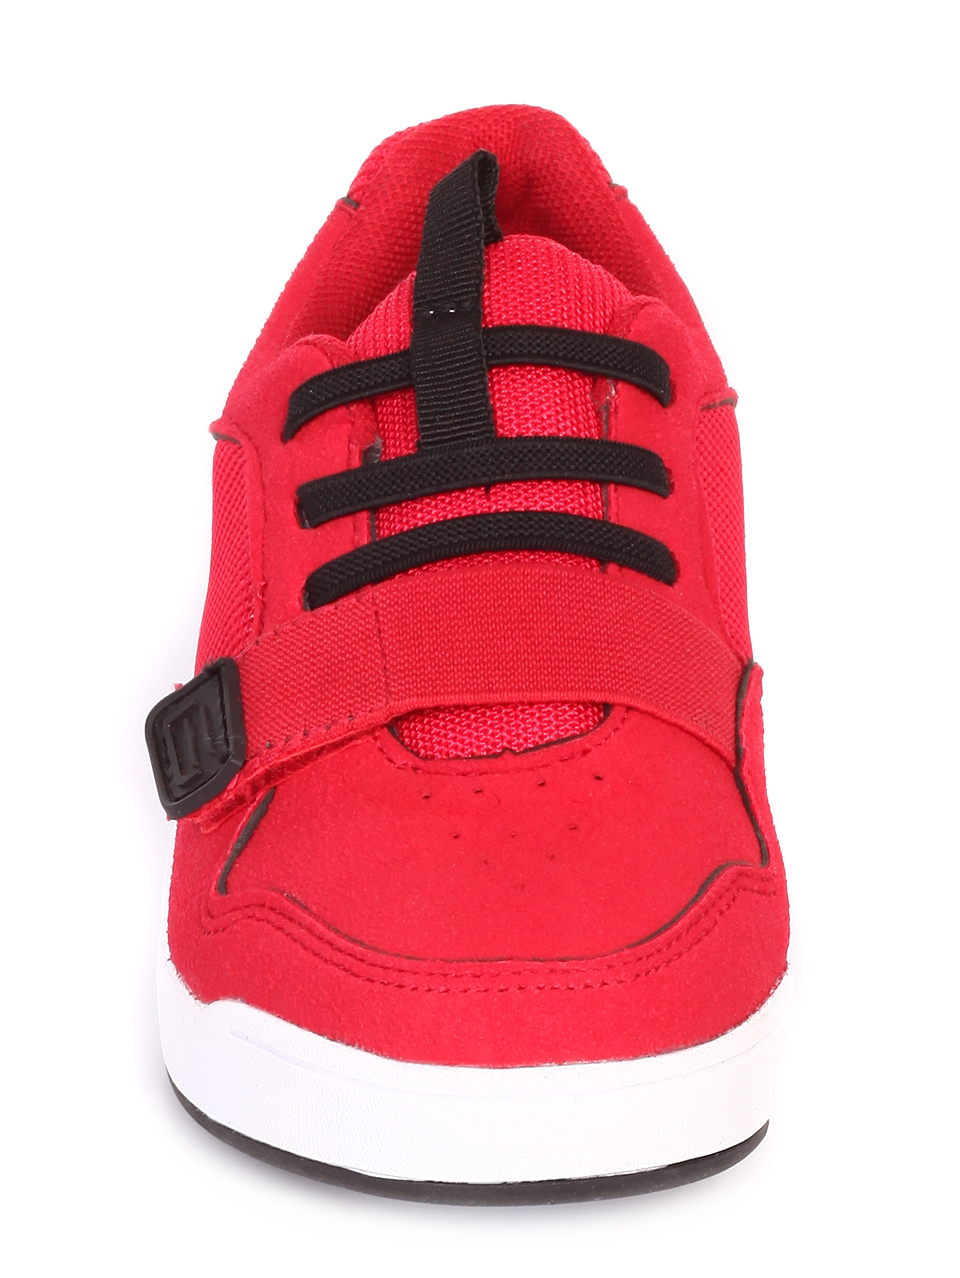 Ежедневни детски обувки в червено 18U-19173 red